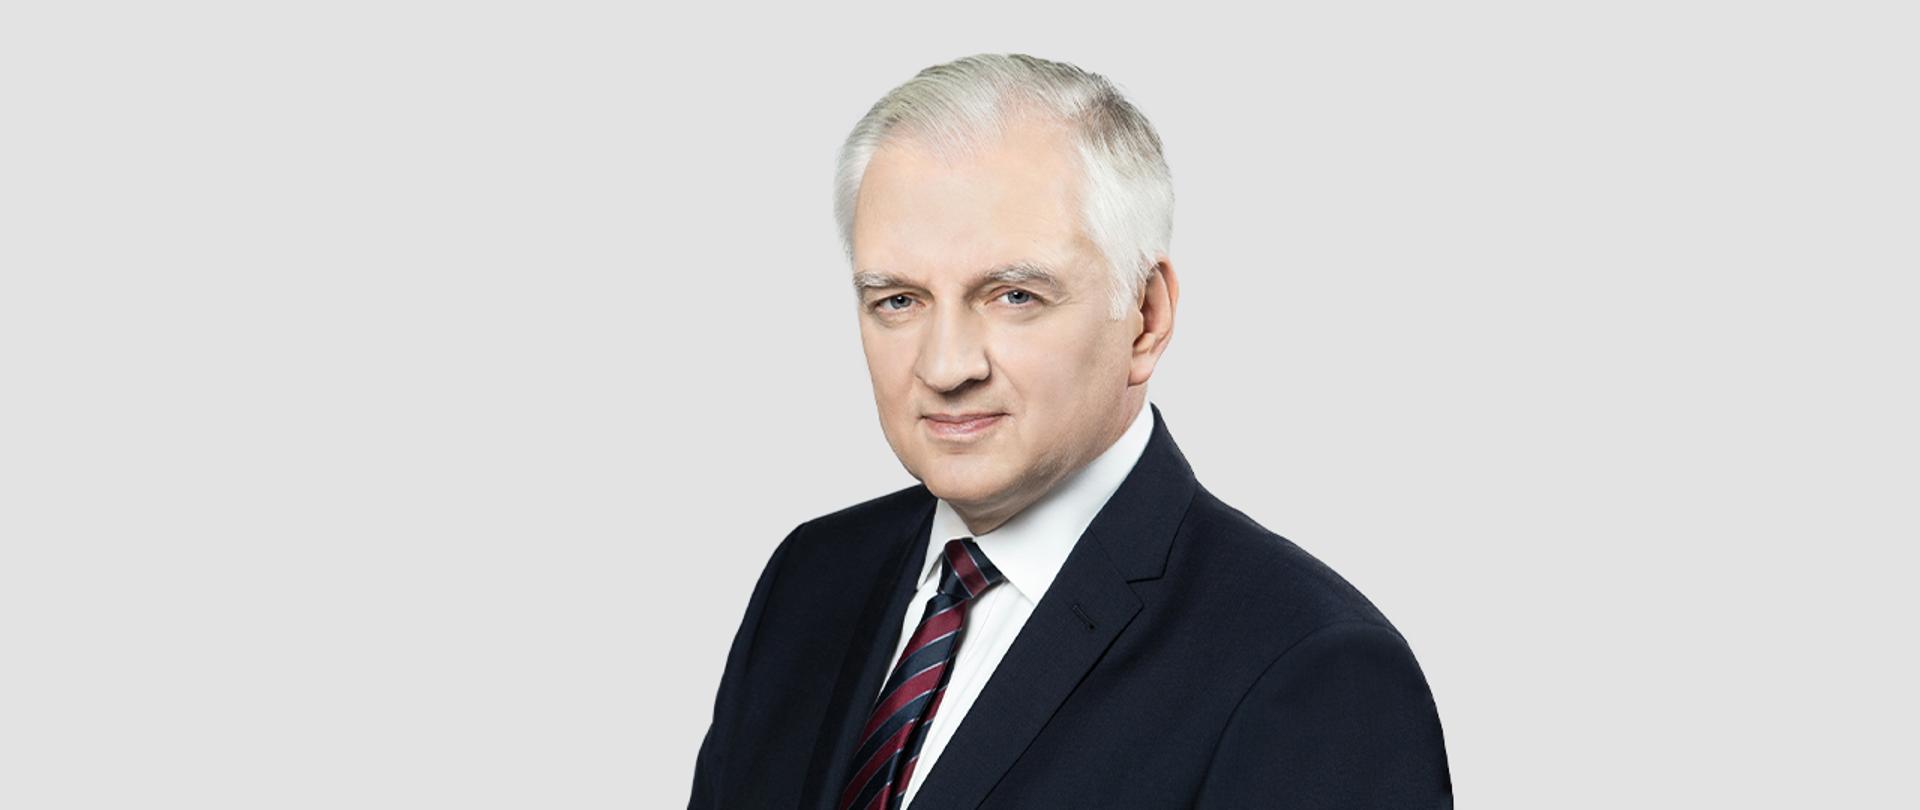 Deputy Prime Minister Jarosław Gowin